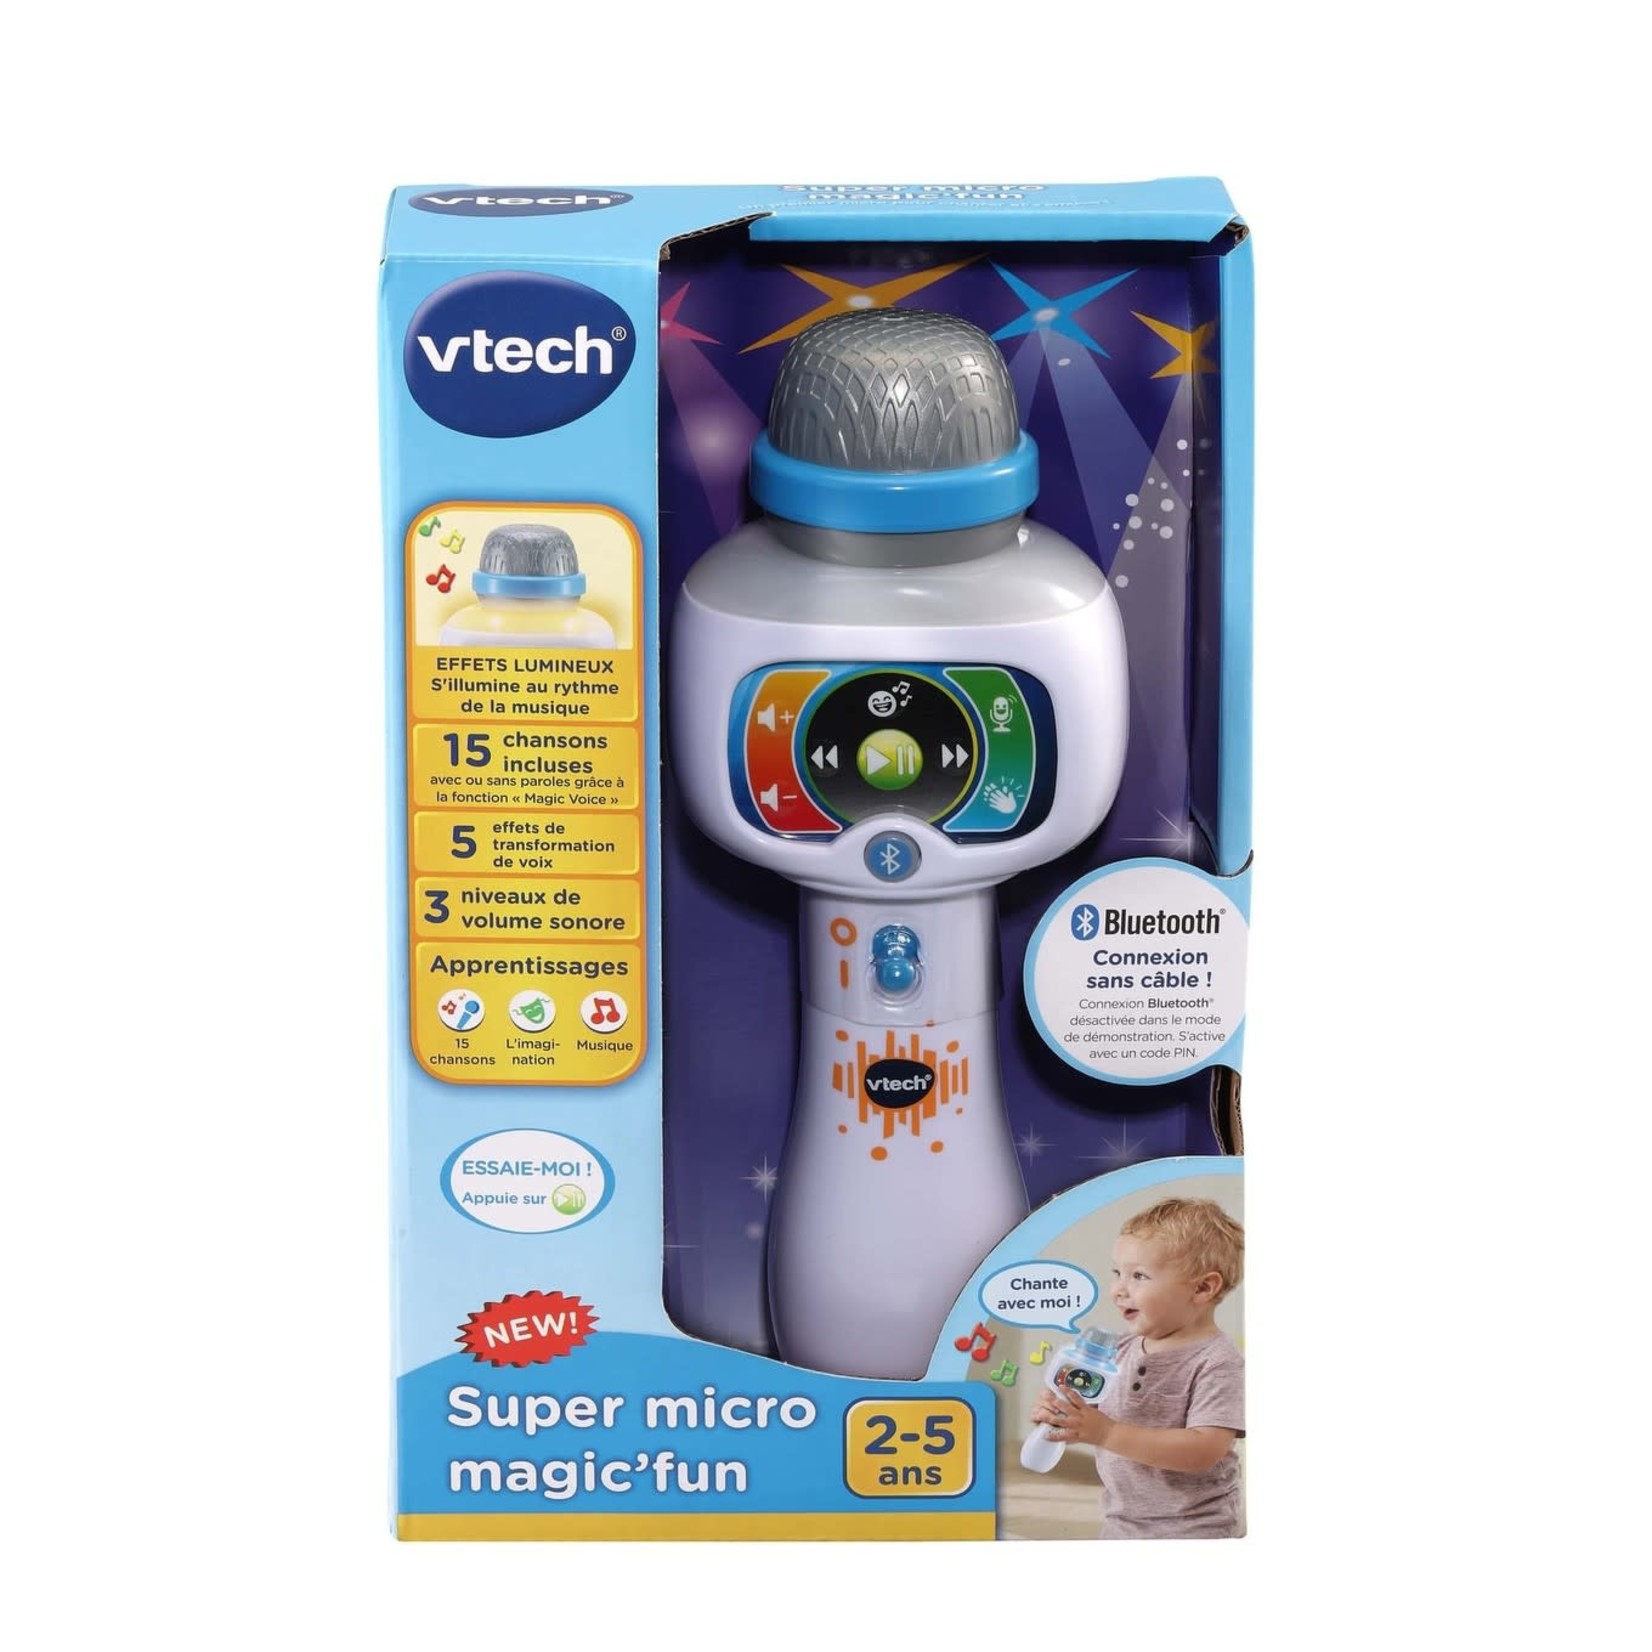 VTech - Super micro magic'fun - Maitre des Jeux